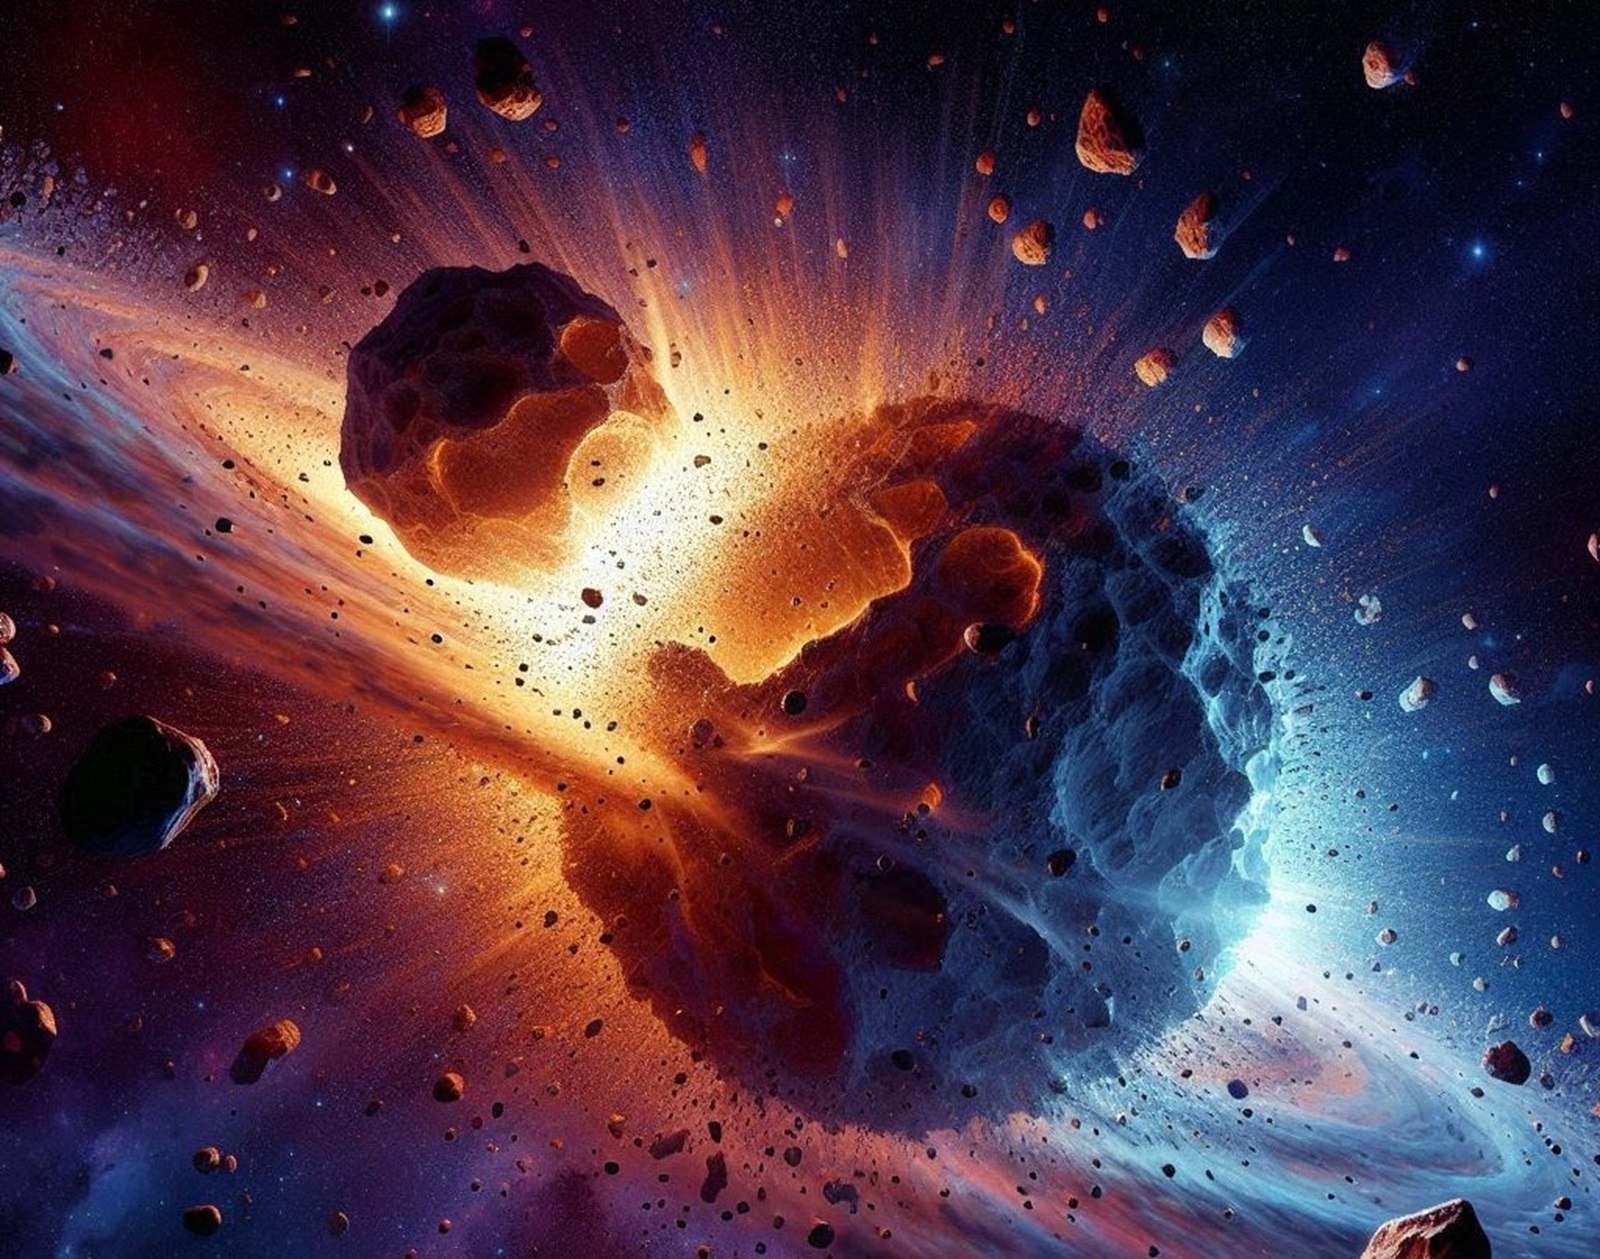 Une collision astéroïdes vue par l'IA Bing Image. © 2024 Microsoft Corporation